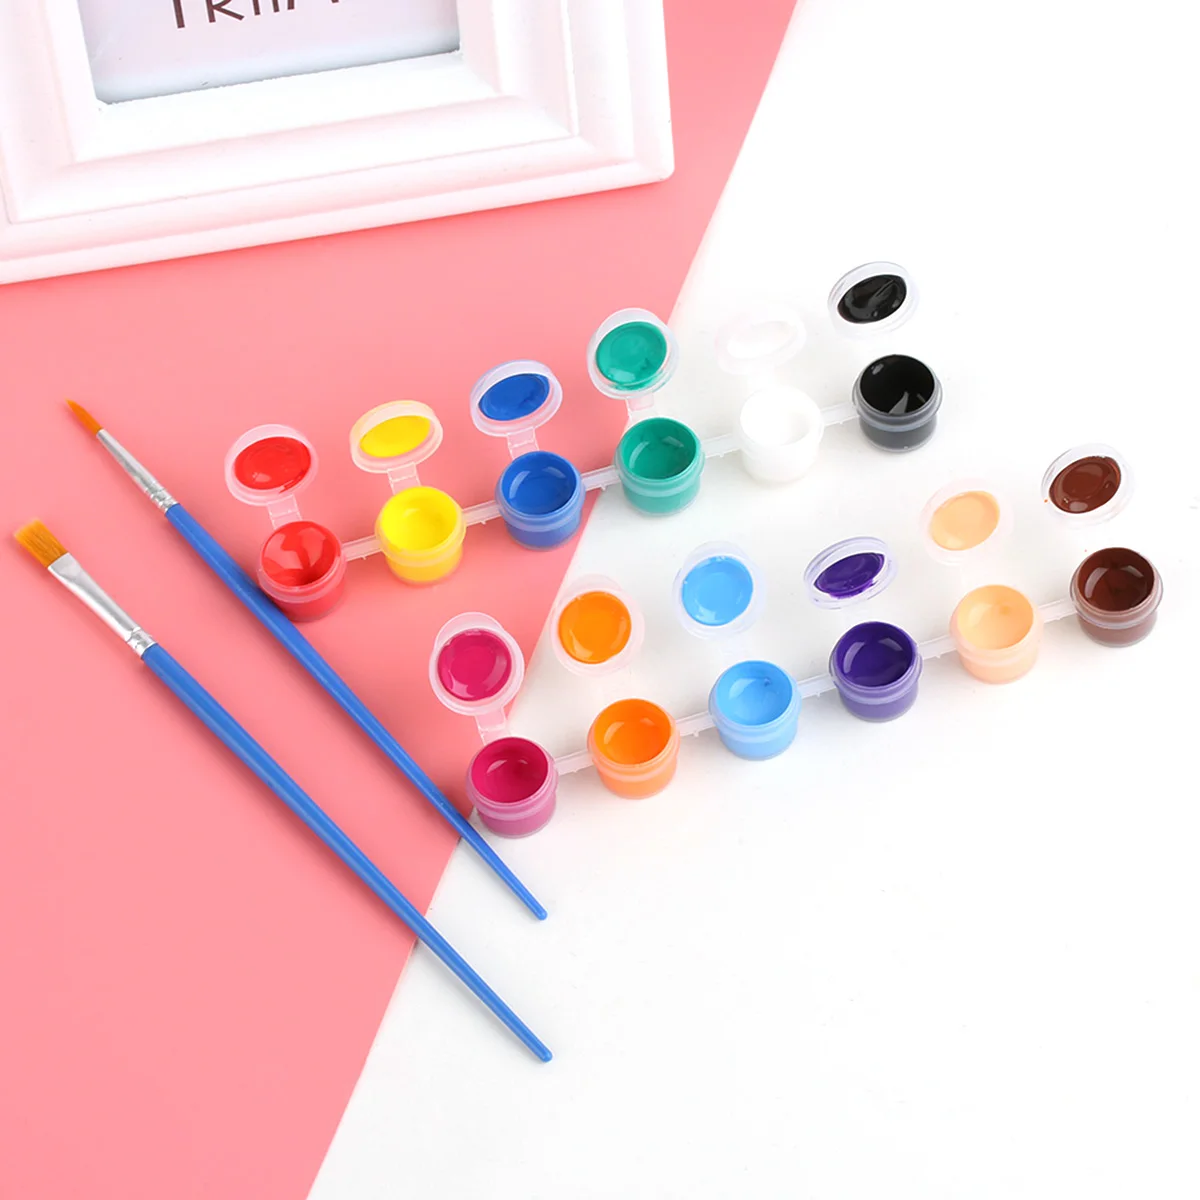 12 цветов с 2 кистями для рисования в наборе, акриловая краска s для масляной краски, дизайн ногтей, одежда, художественная цифровая настенная краска, набор